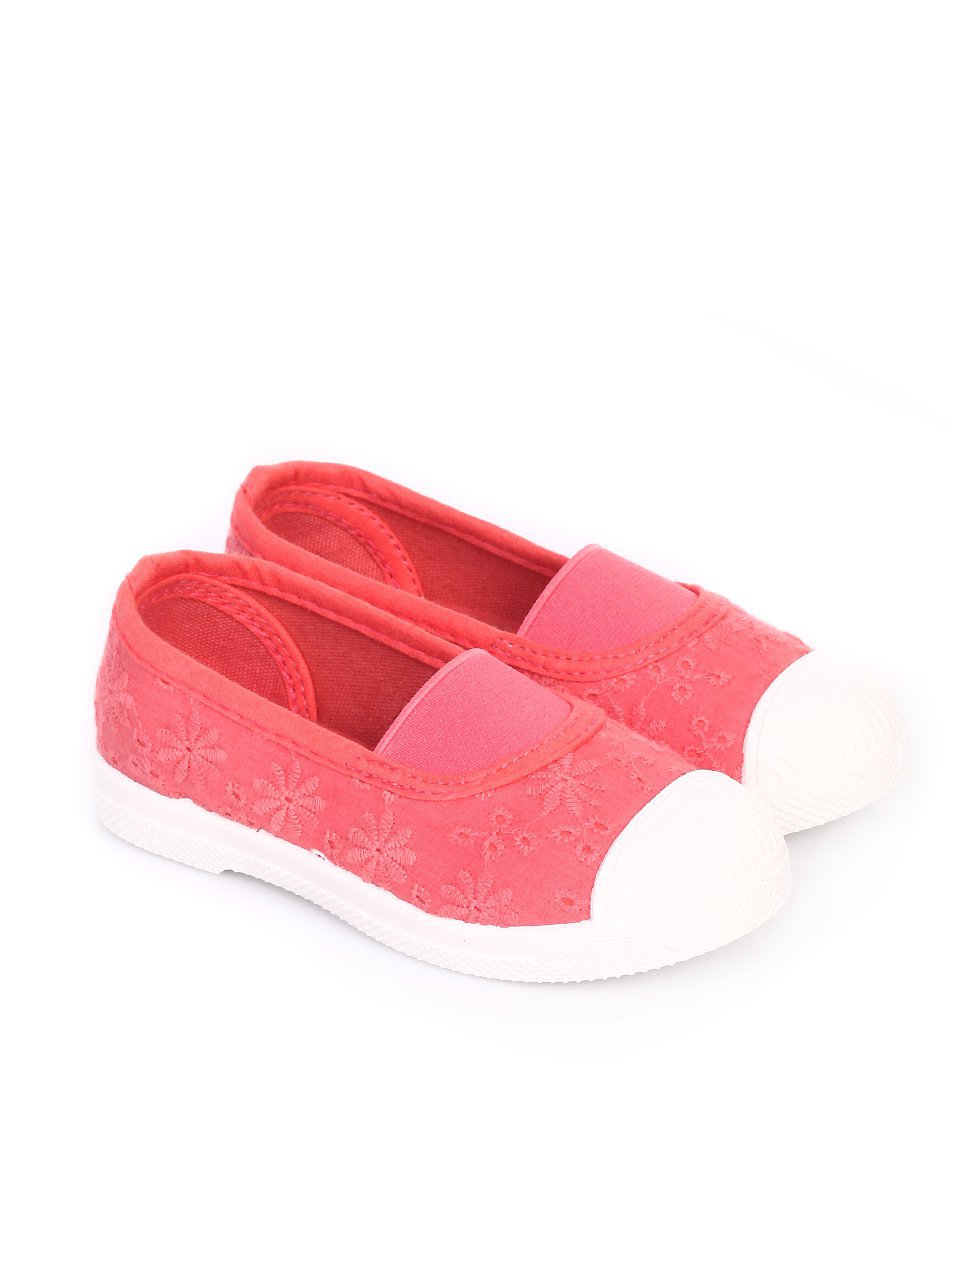 Ежедневни детски обувки с цвят корал 18U-17030 coral